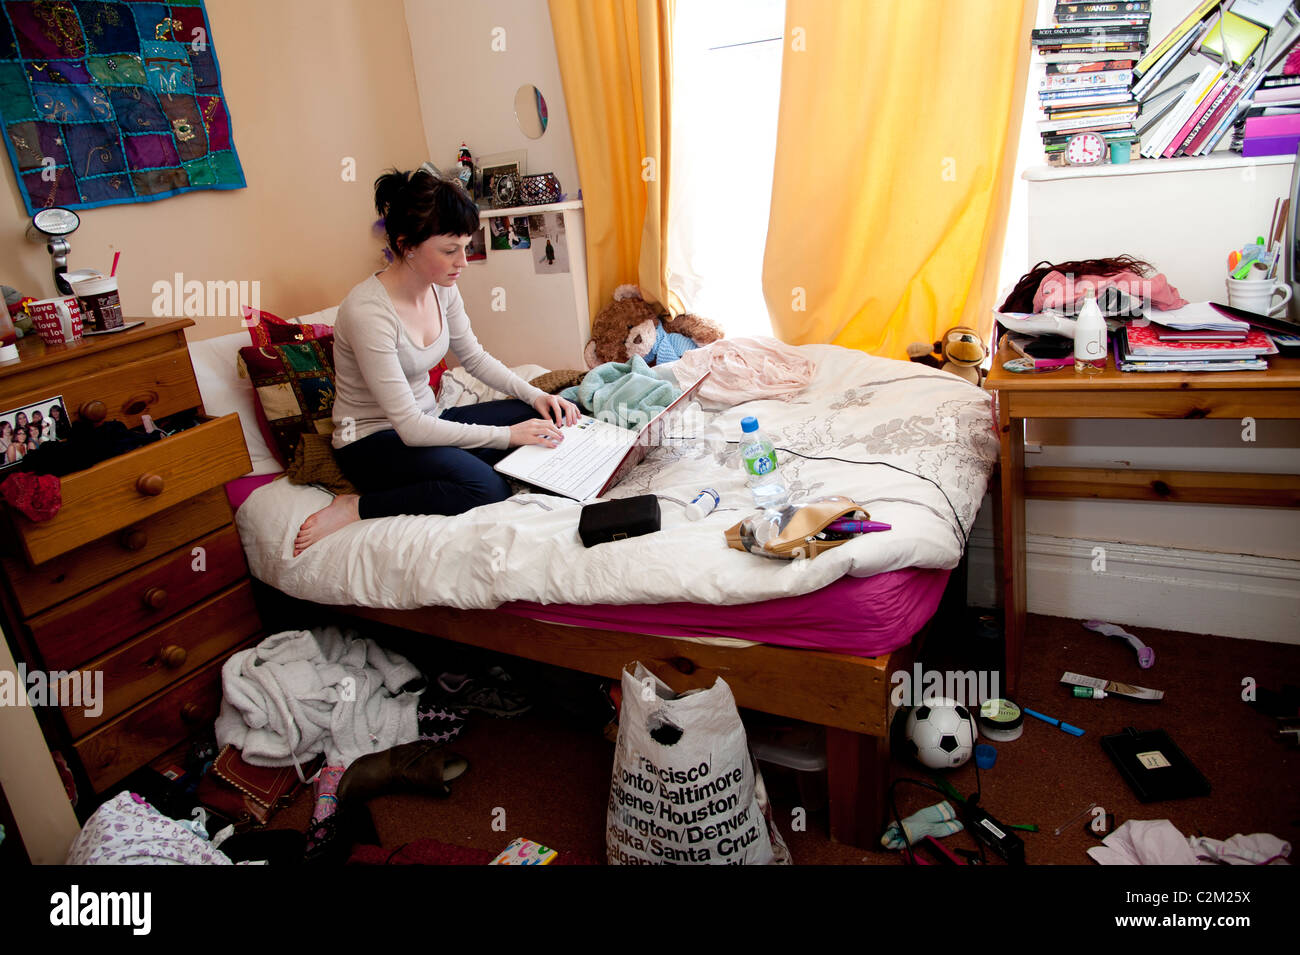 Una joven estudiante universitaria en el Reino Unido trabajan en su computadora portátil en la cama en un dormitorio desordenado Foto de stock